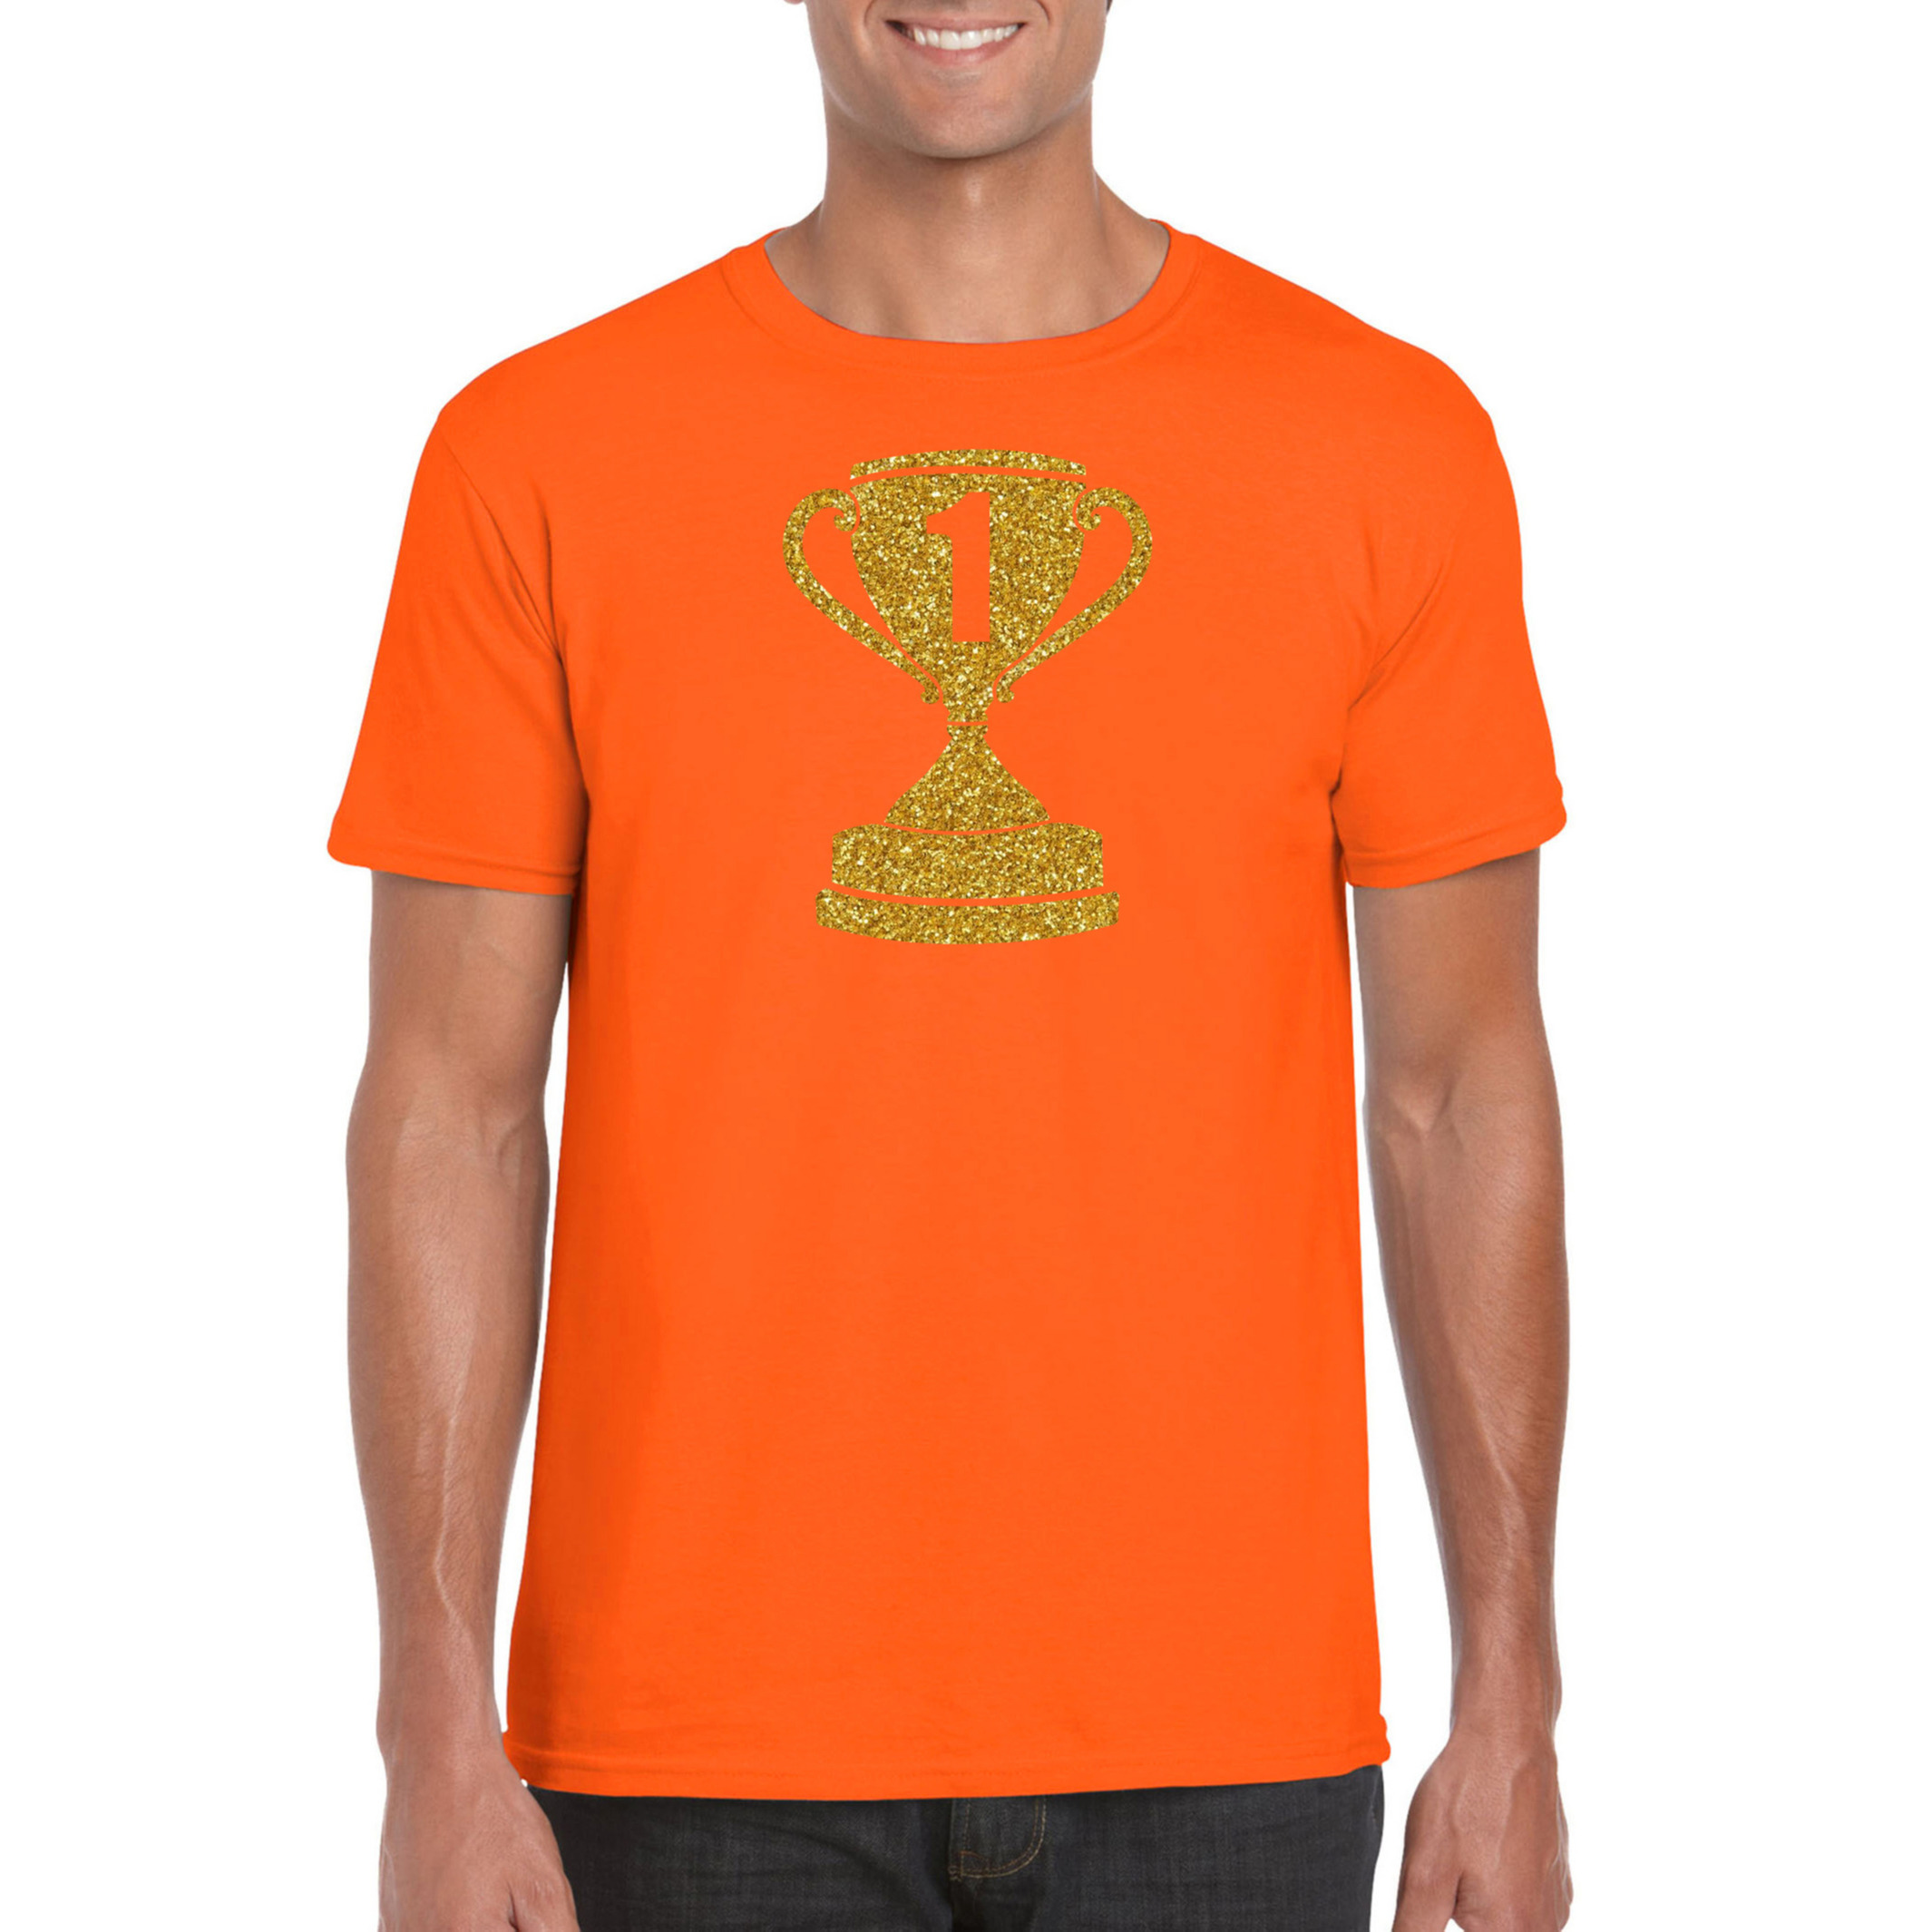 Gouden kampioens beker-nummer 1 t-shirt-kleding oranje heren